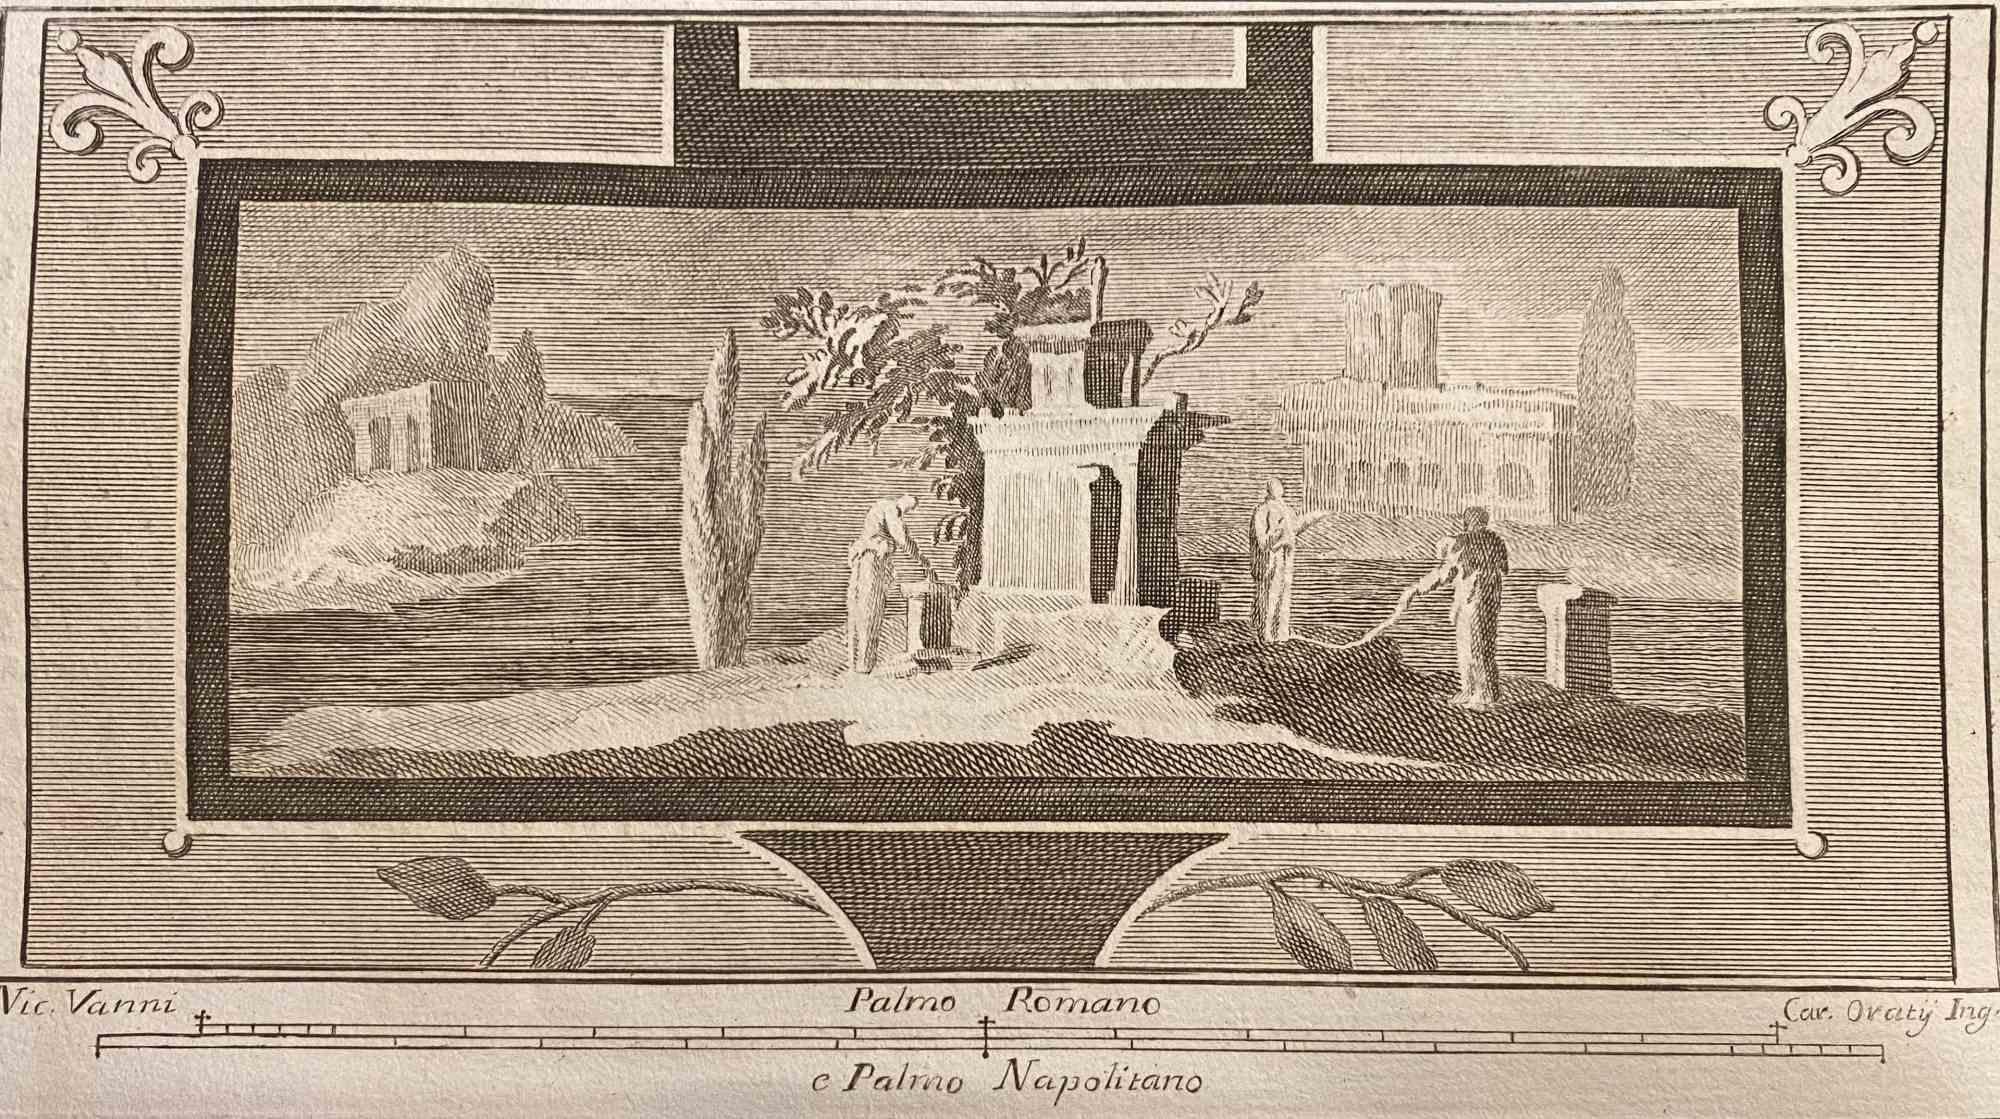 Fresque de temple romain des "Antiquités d'Herculanum" est une gravure sur papier réalisée par Carlo Oraty au 18e siècle.

Signé sur la plaque.

Bonnes conditions.

La gravure appartient à la suite d'estampes "Antiquités d'Herculanum exposées"